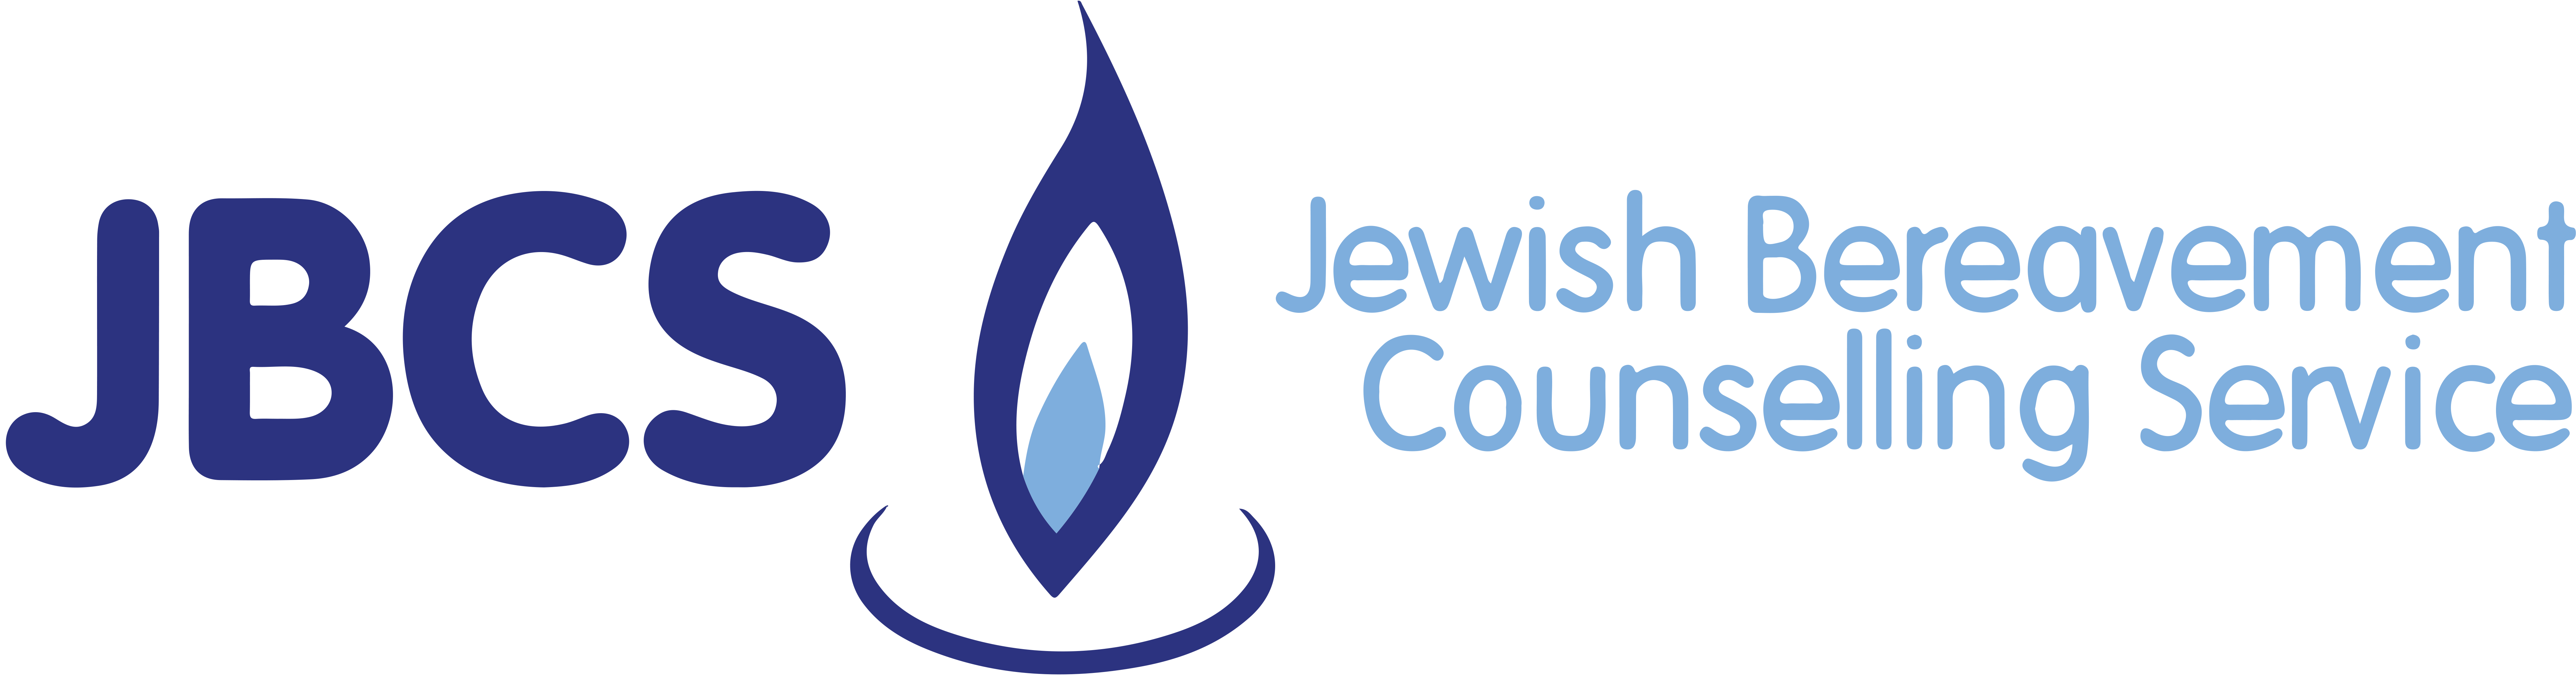 Jewish Bereavement Counselling Service logo